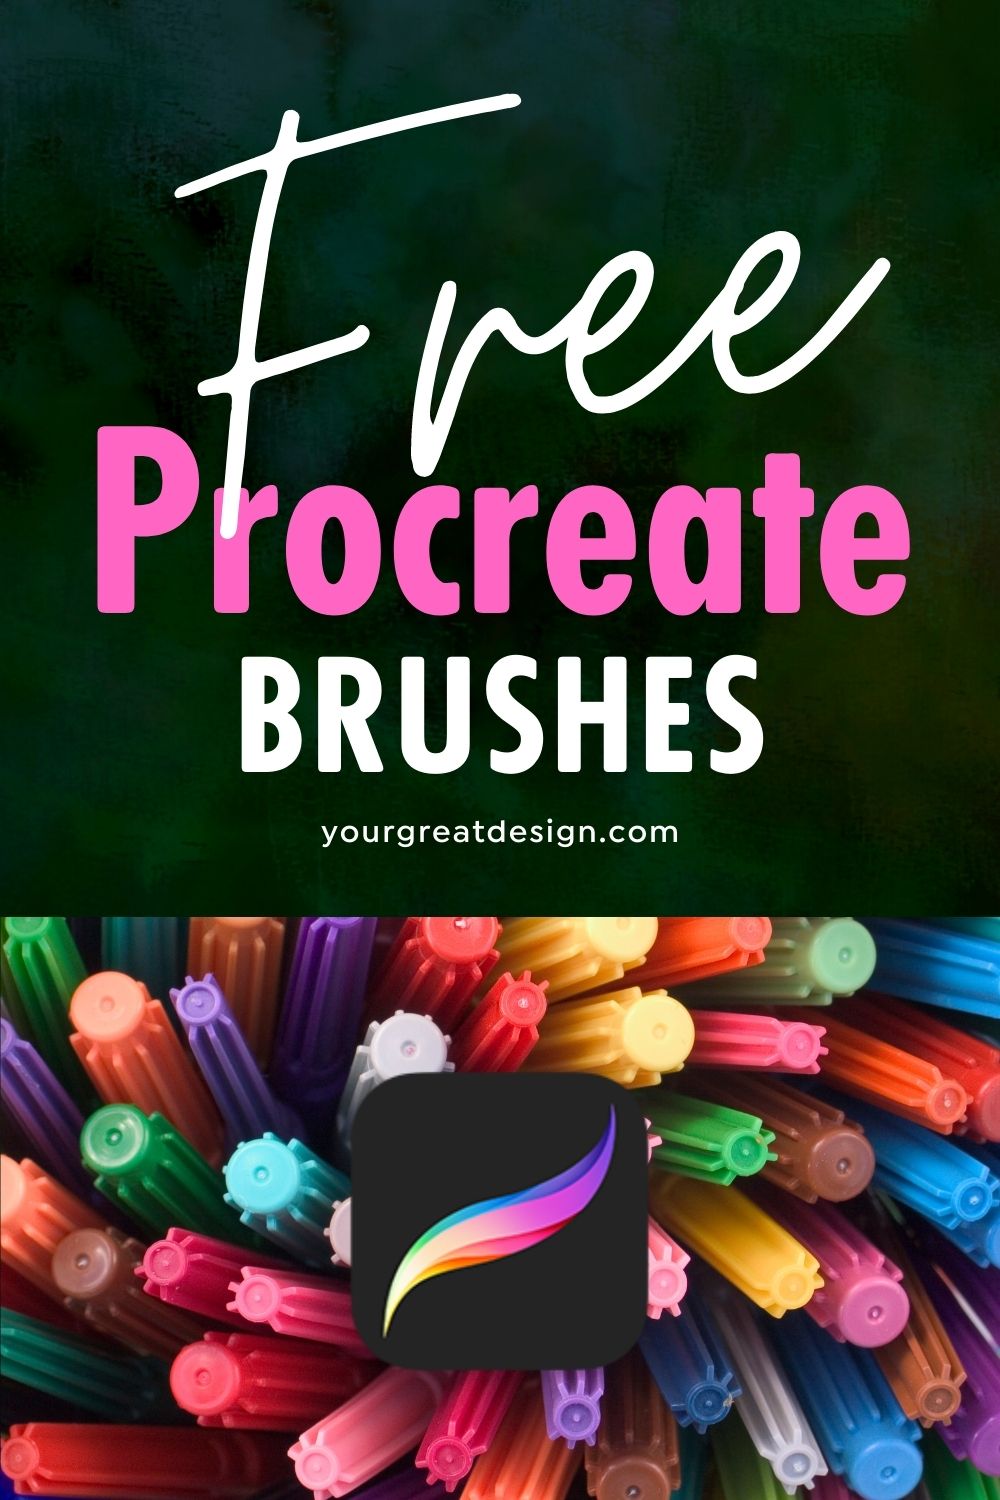 procreate brushes free